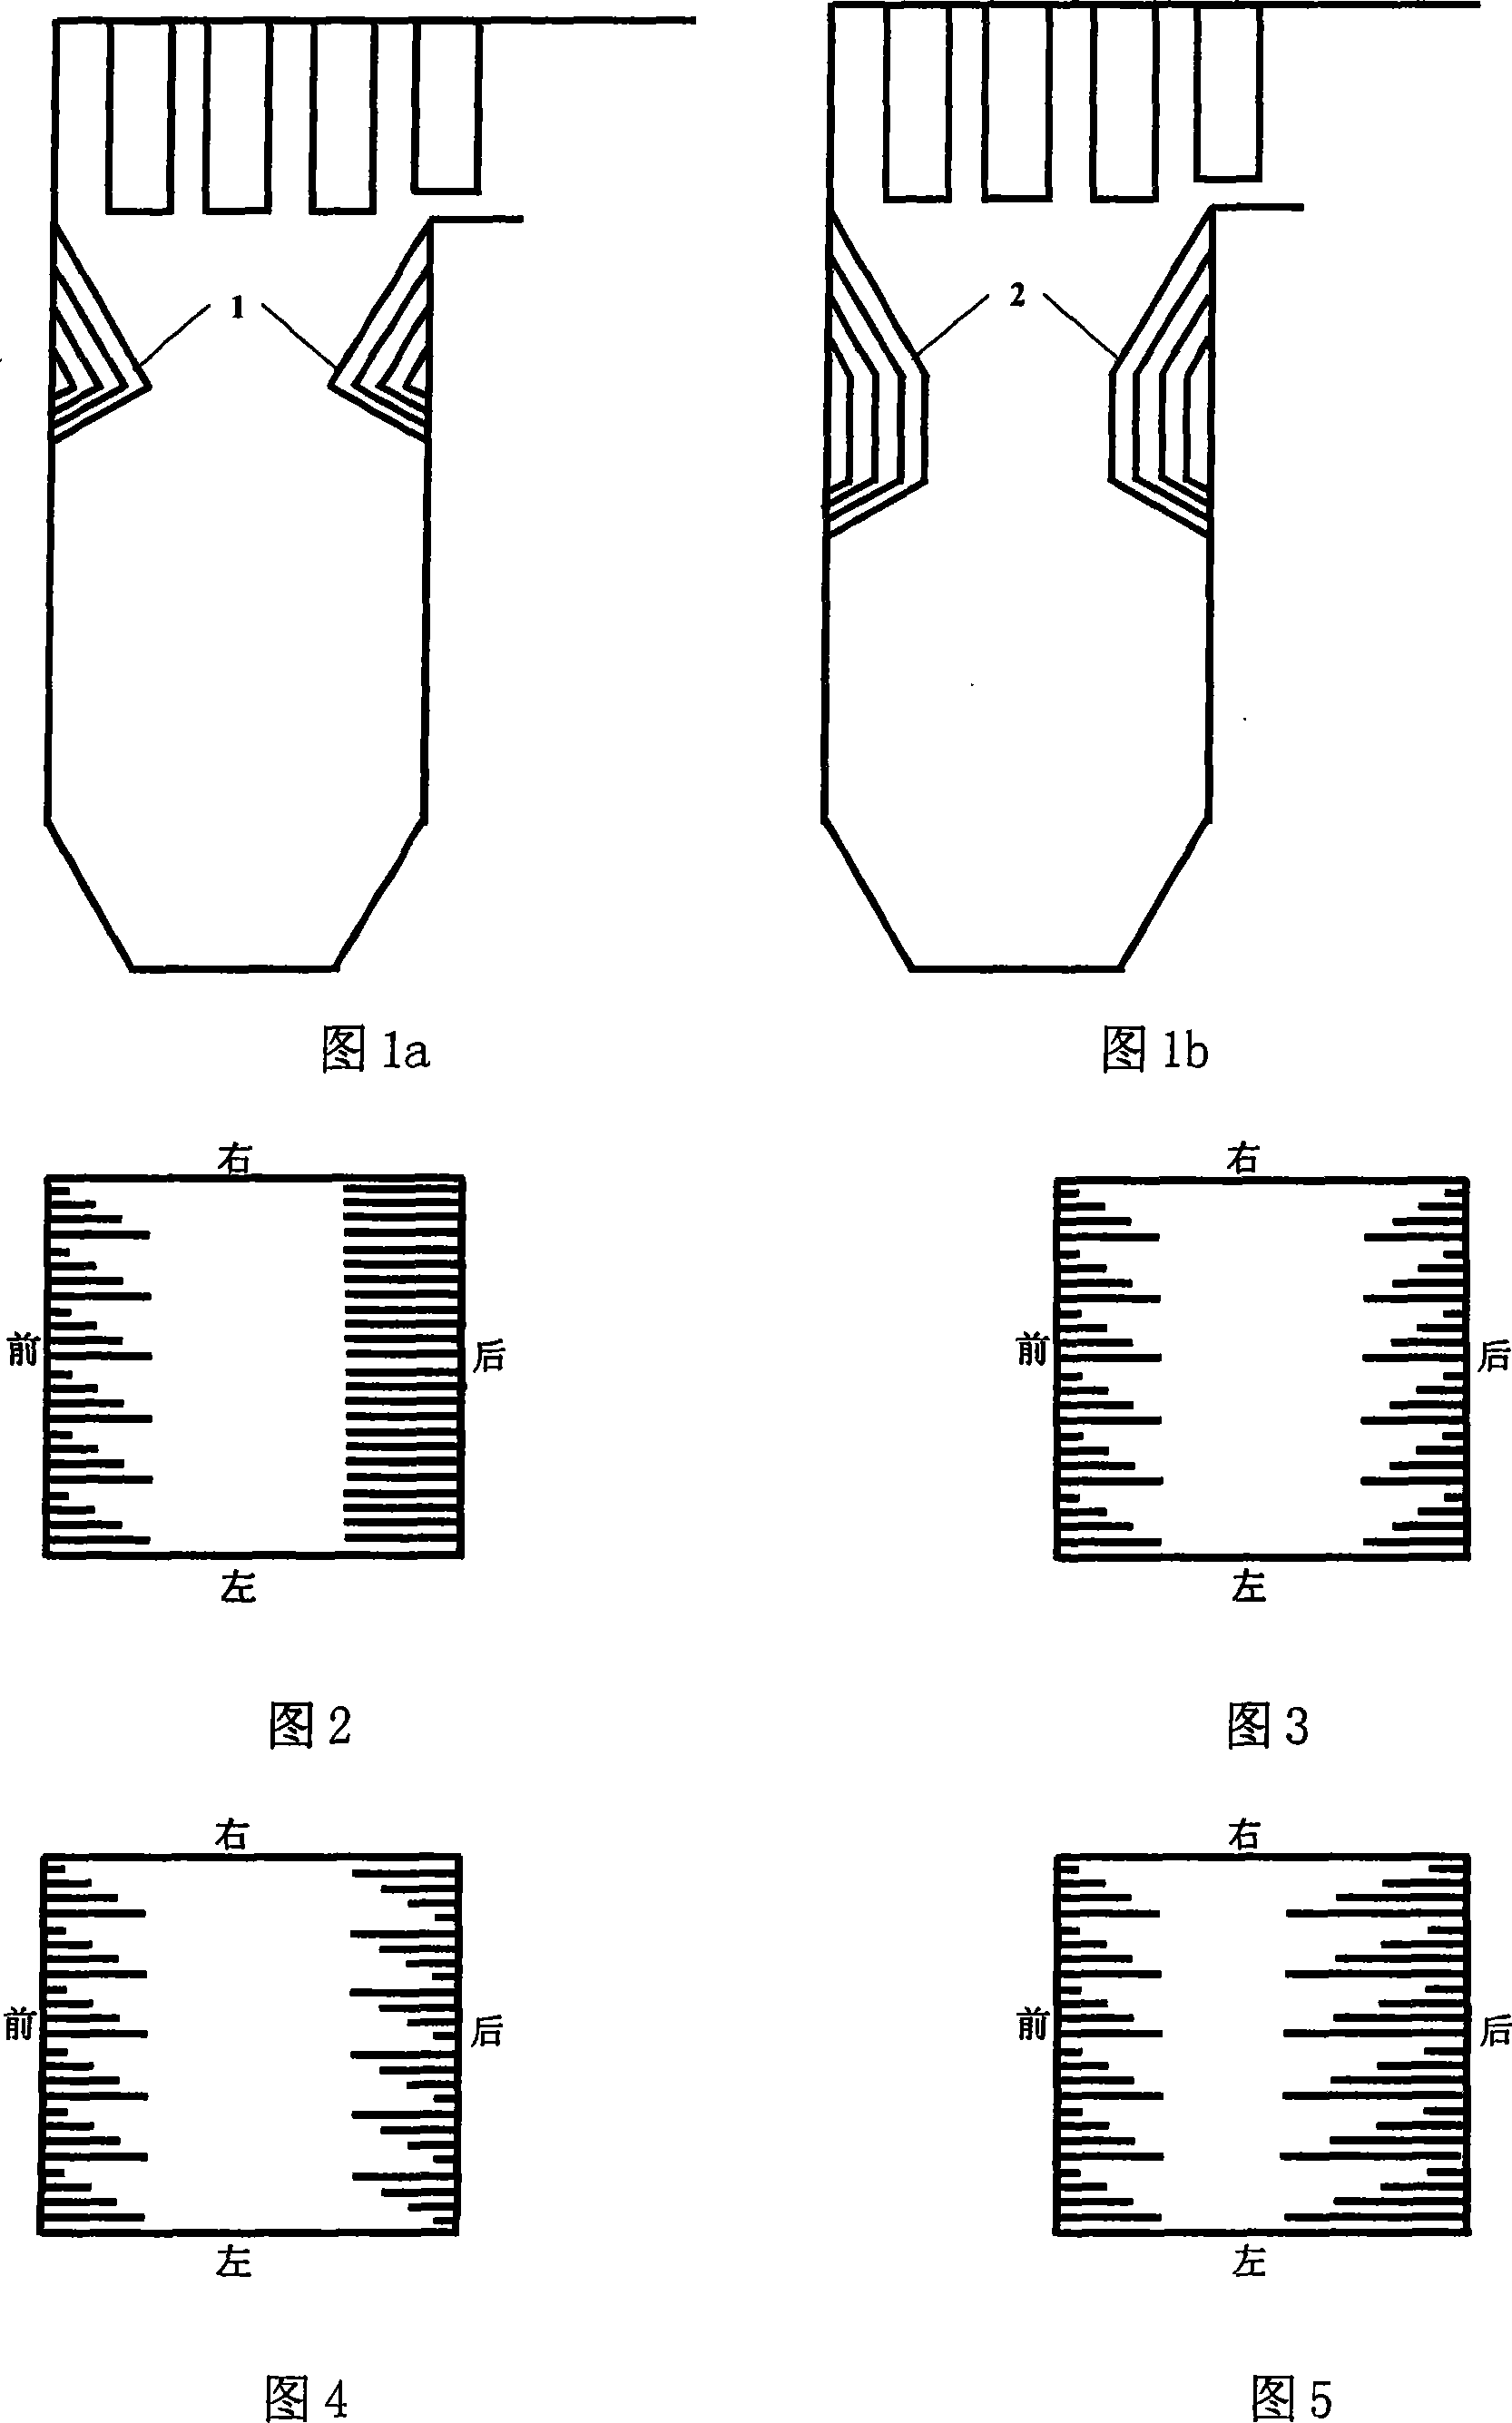 Blaze-folding corner structure for weakening furnace outlet remainder rotation